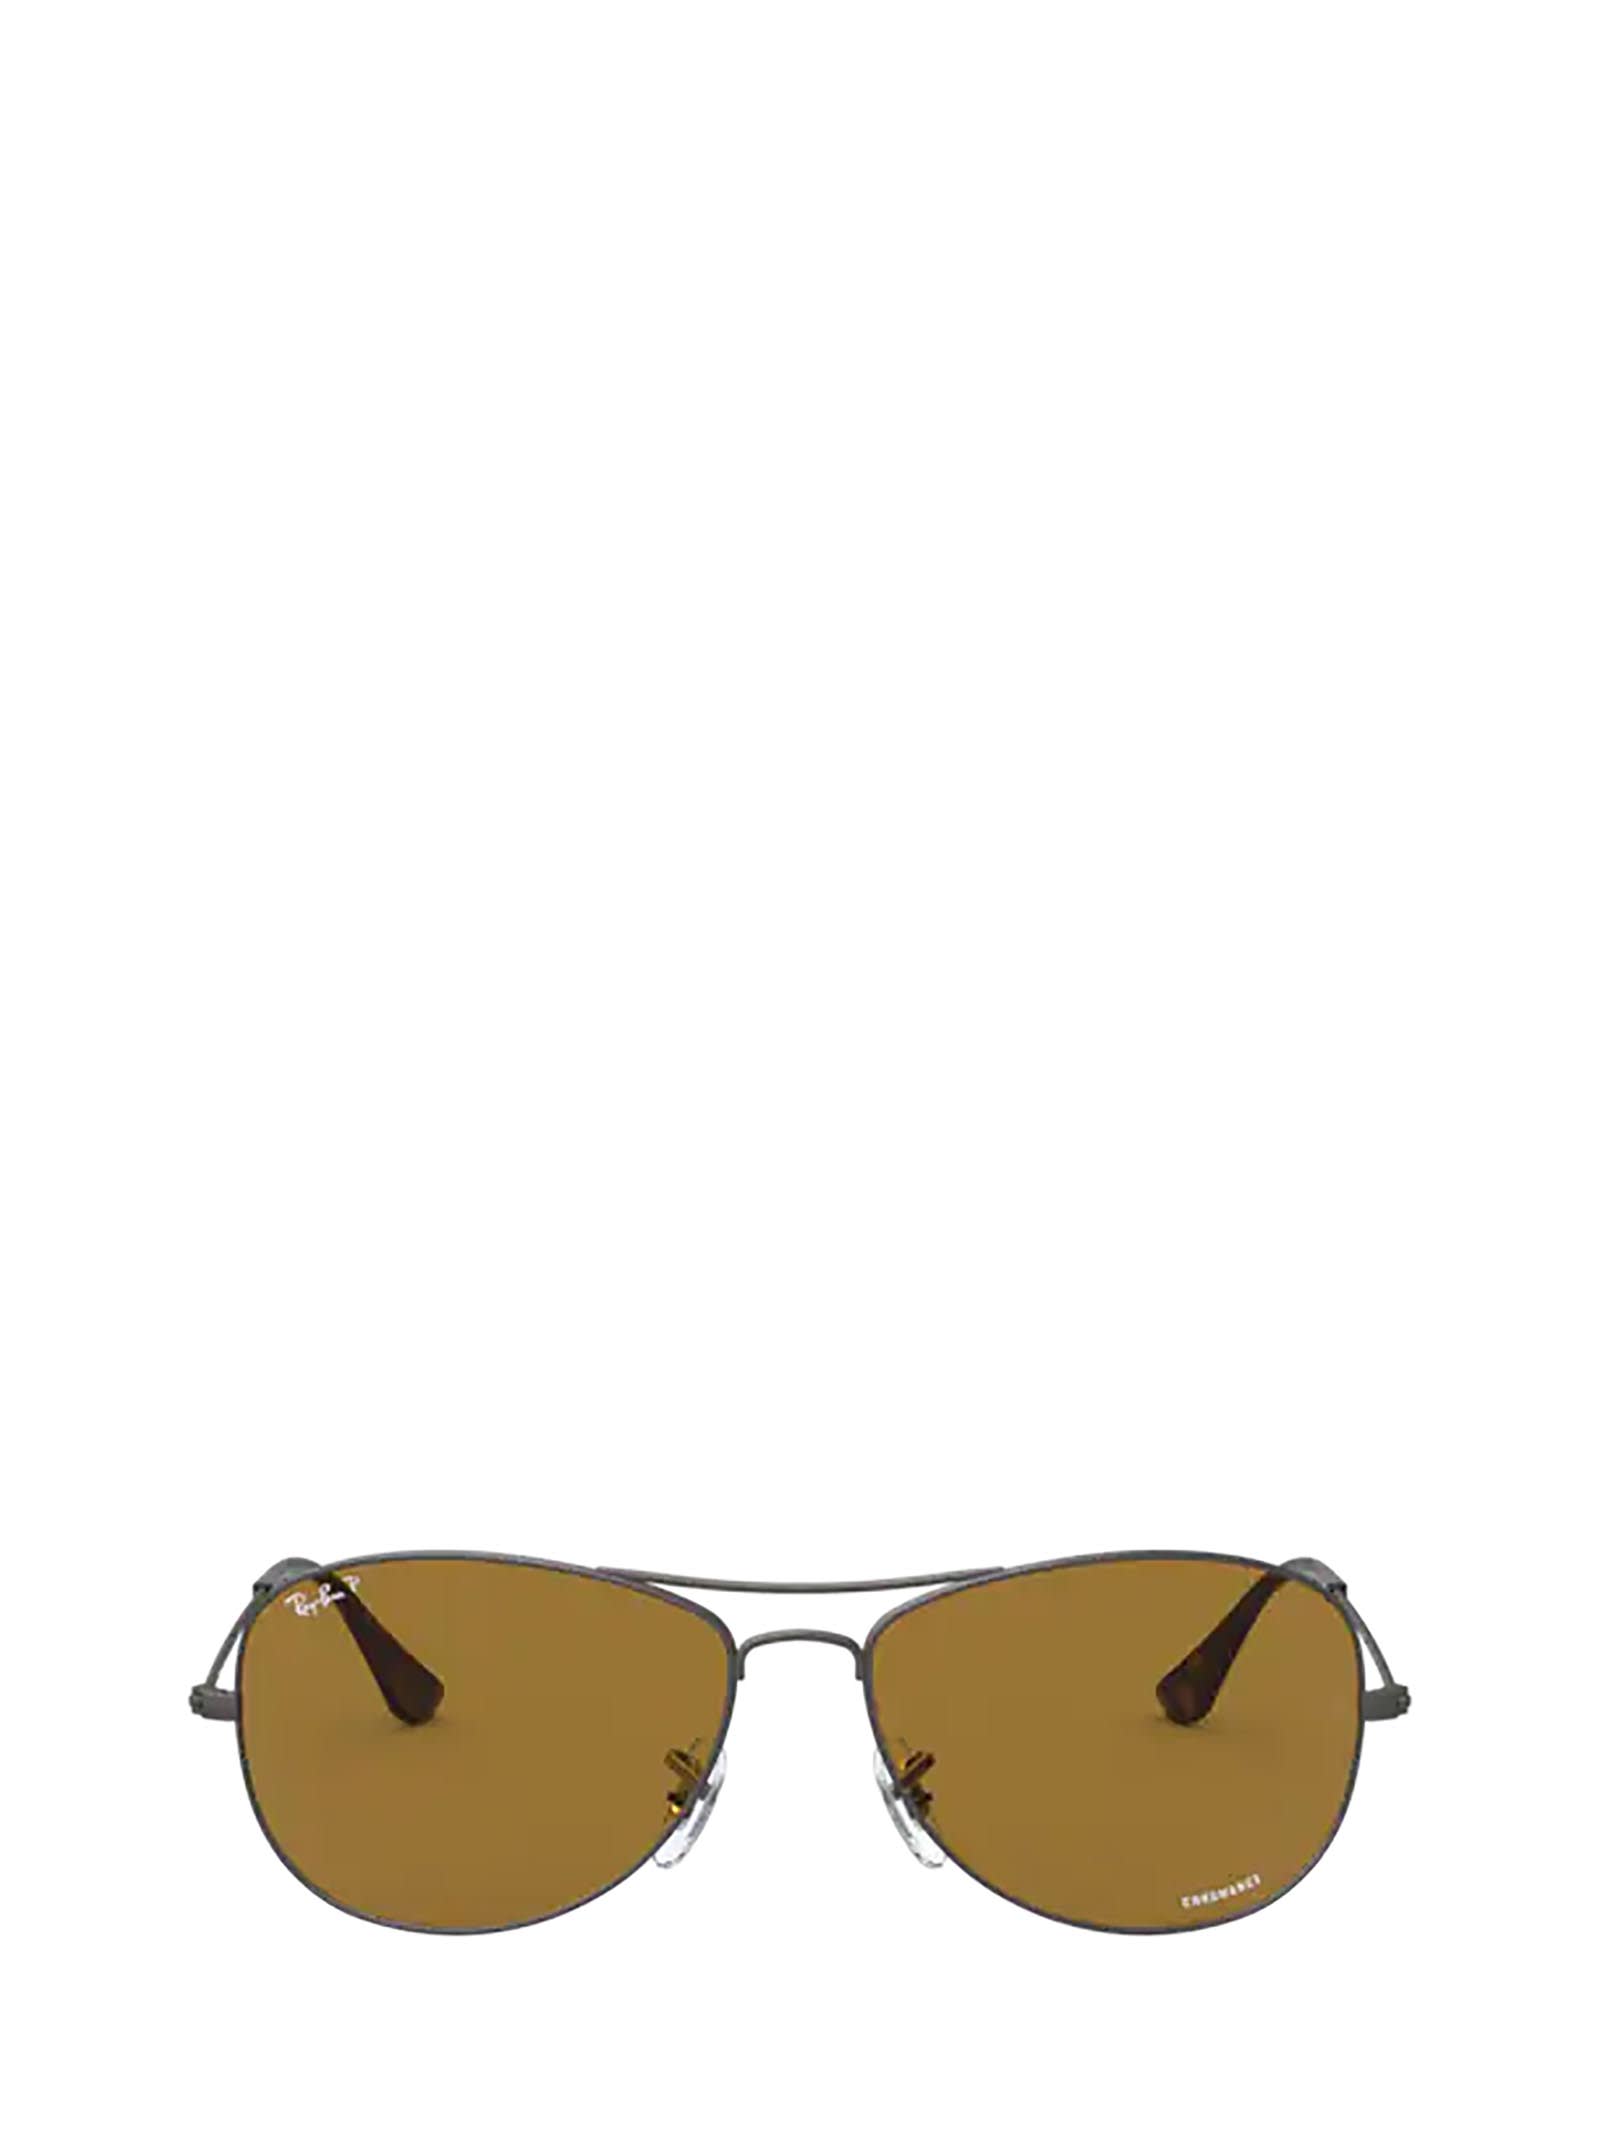 Ray-Ban Ray-ban Rb3562 Matte Gunmetal Sunglasses